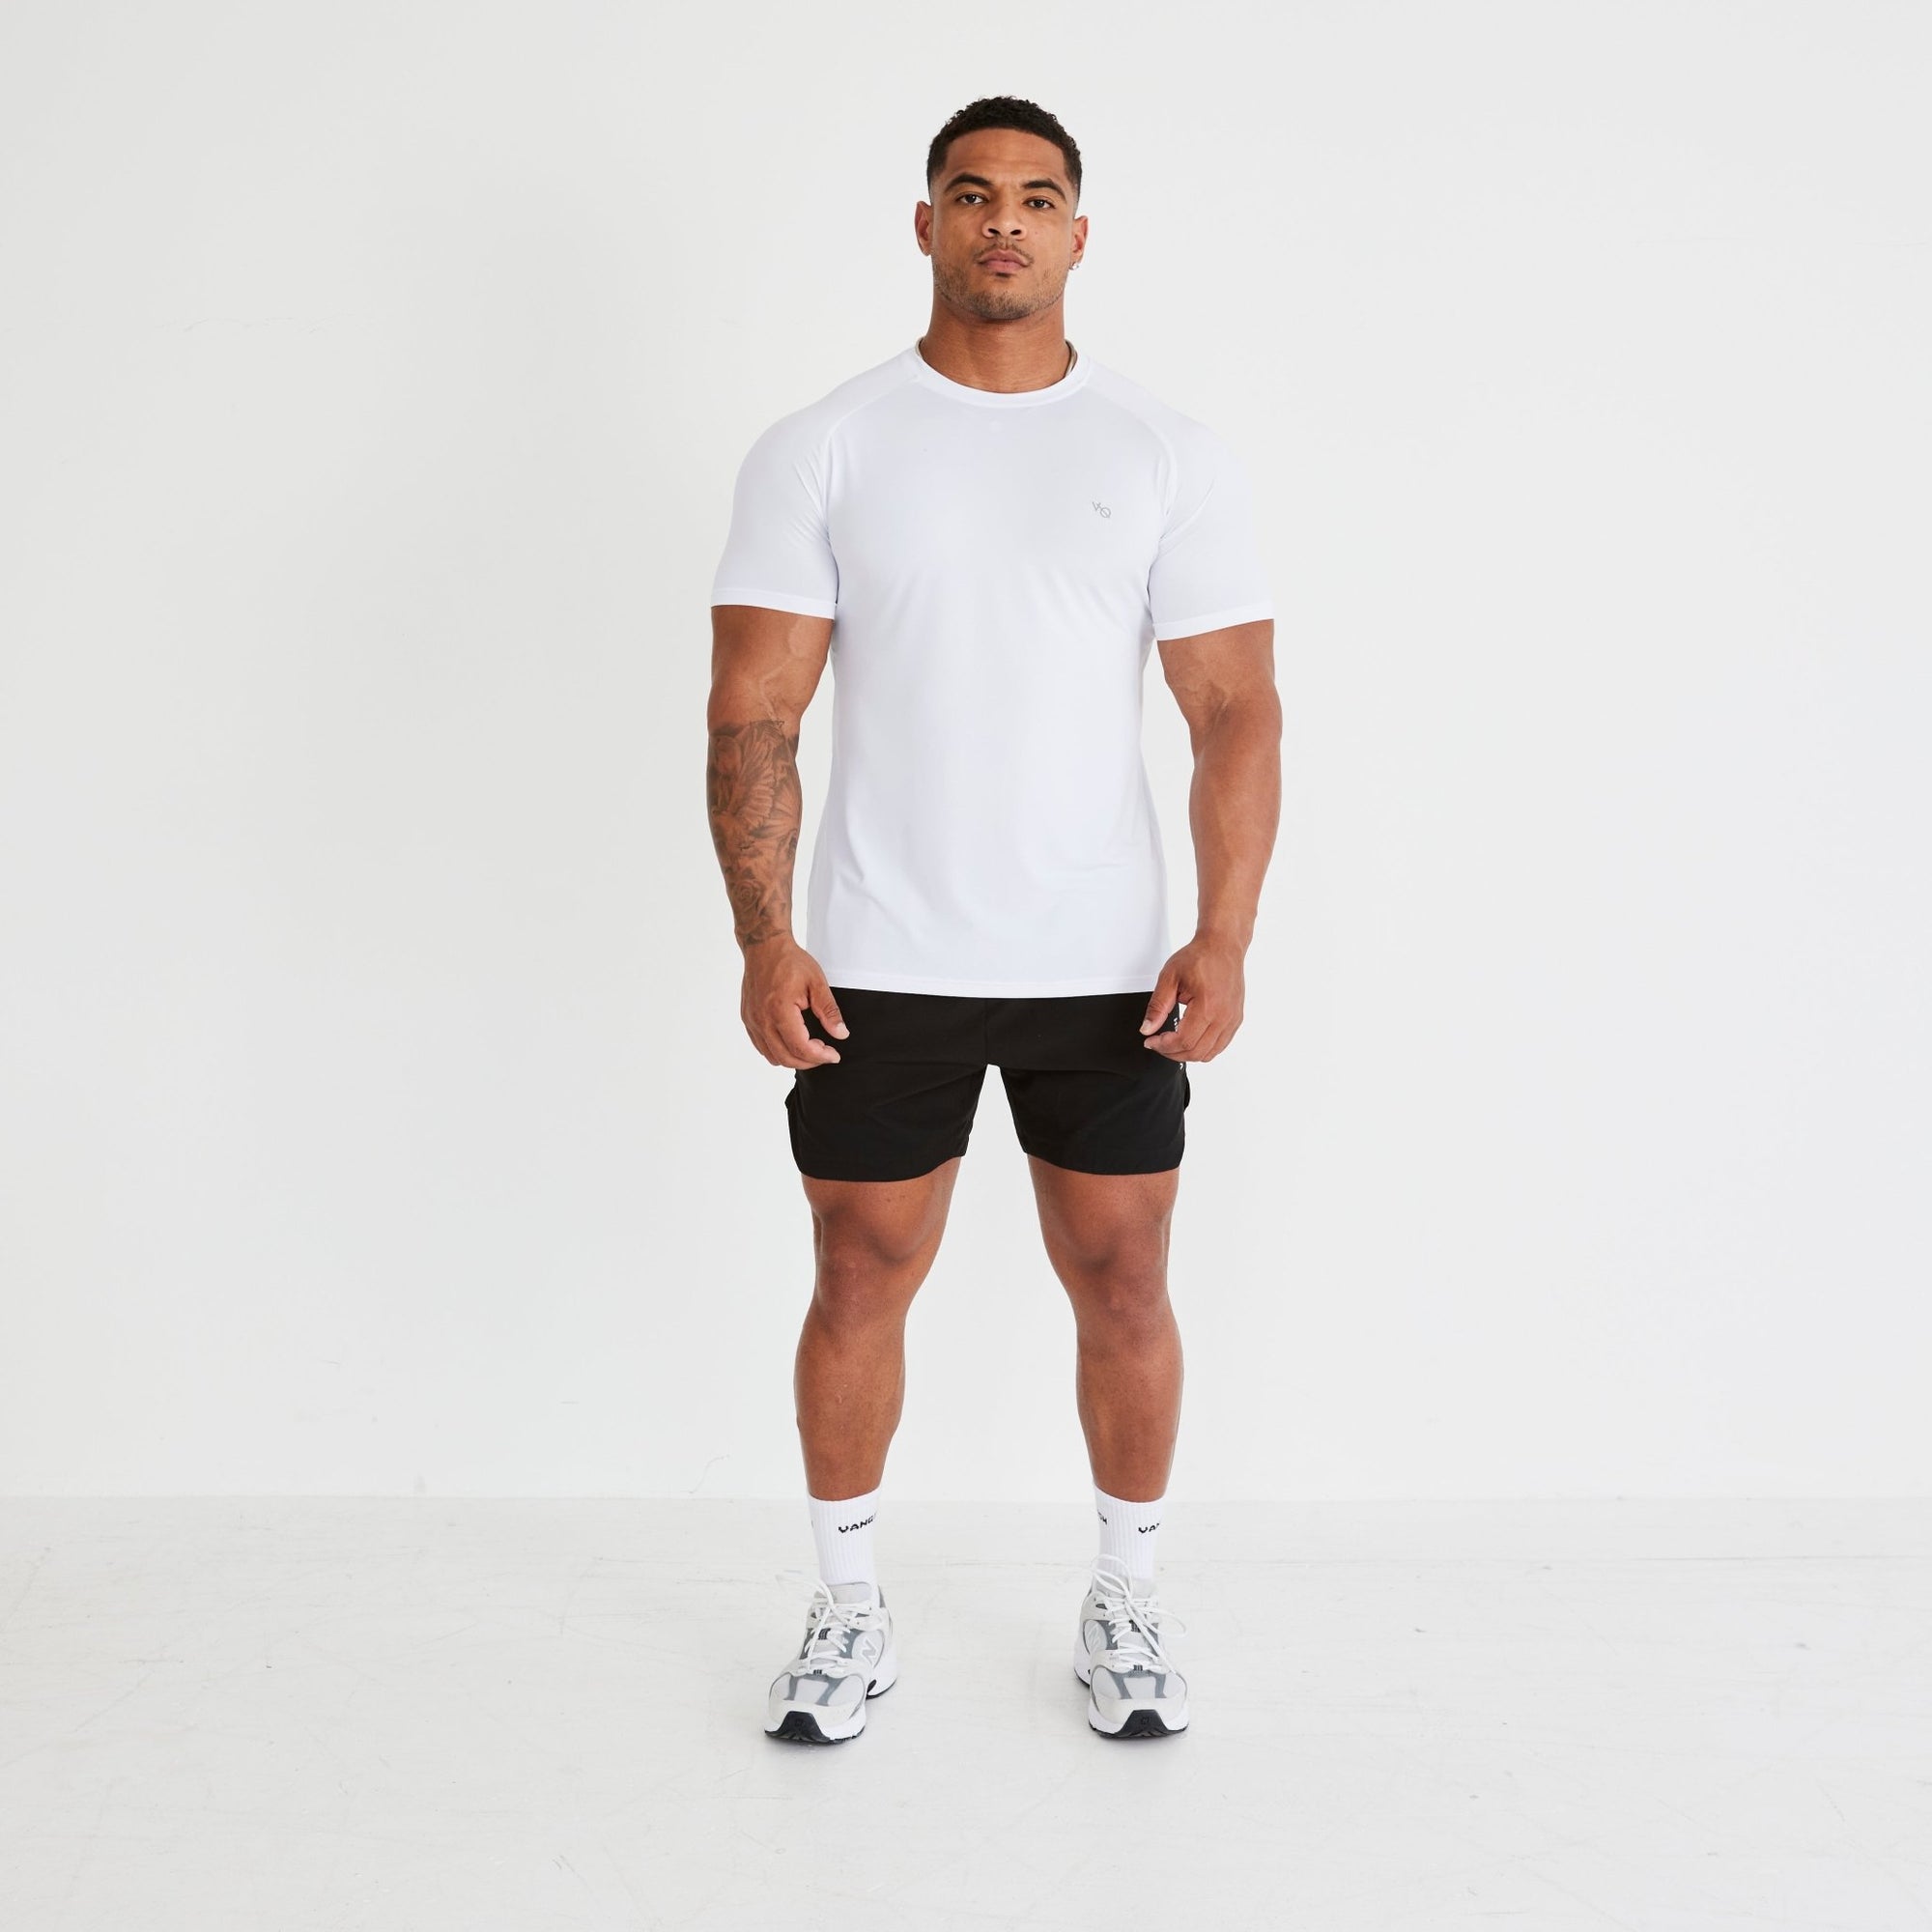 Vanquish Essential White Performance Short Sleeve T Shirt - Vanquish Fitness